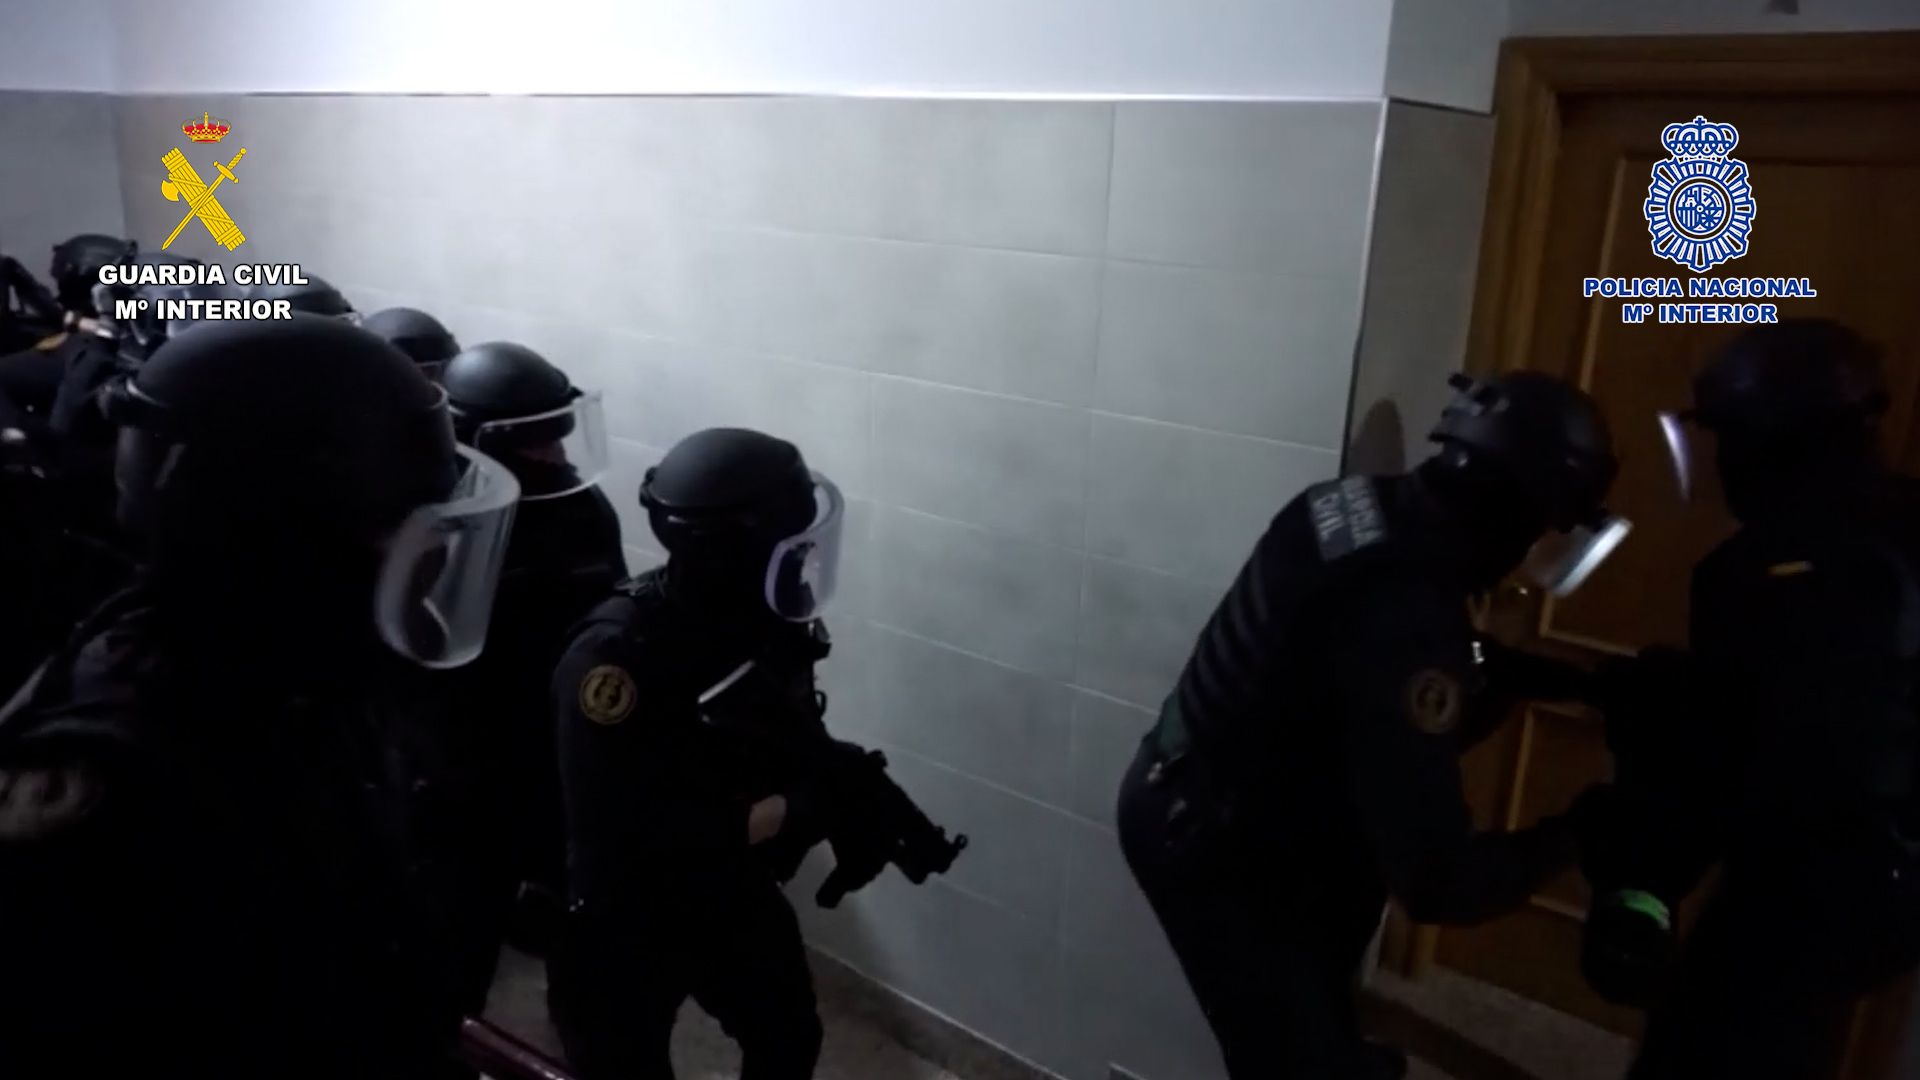 La Guardia Civil y la Policía Nacional desarticulan una organización criminal dedicada al tráfico de drogas a nivel internacional